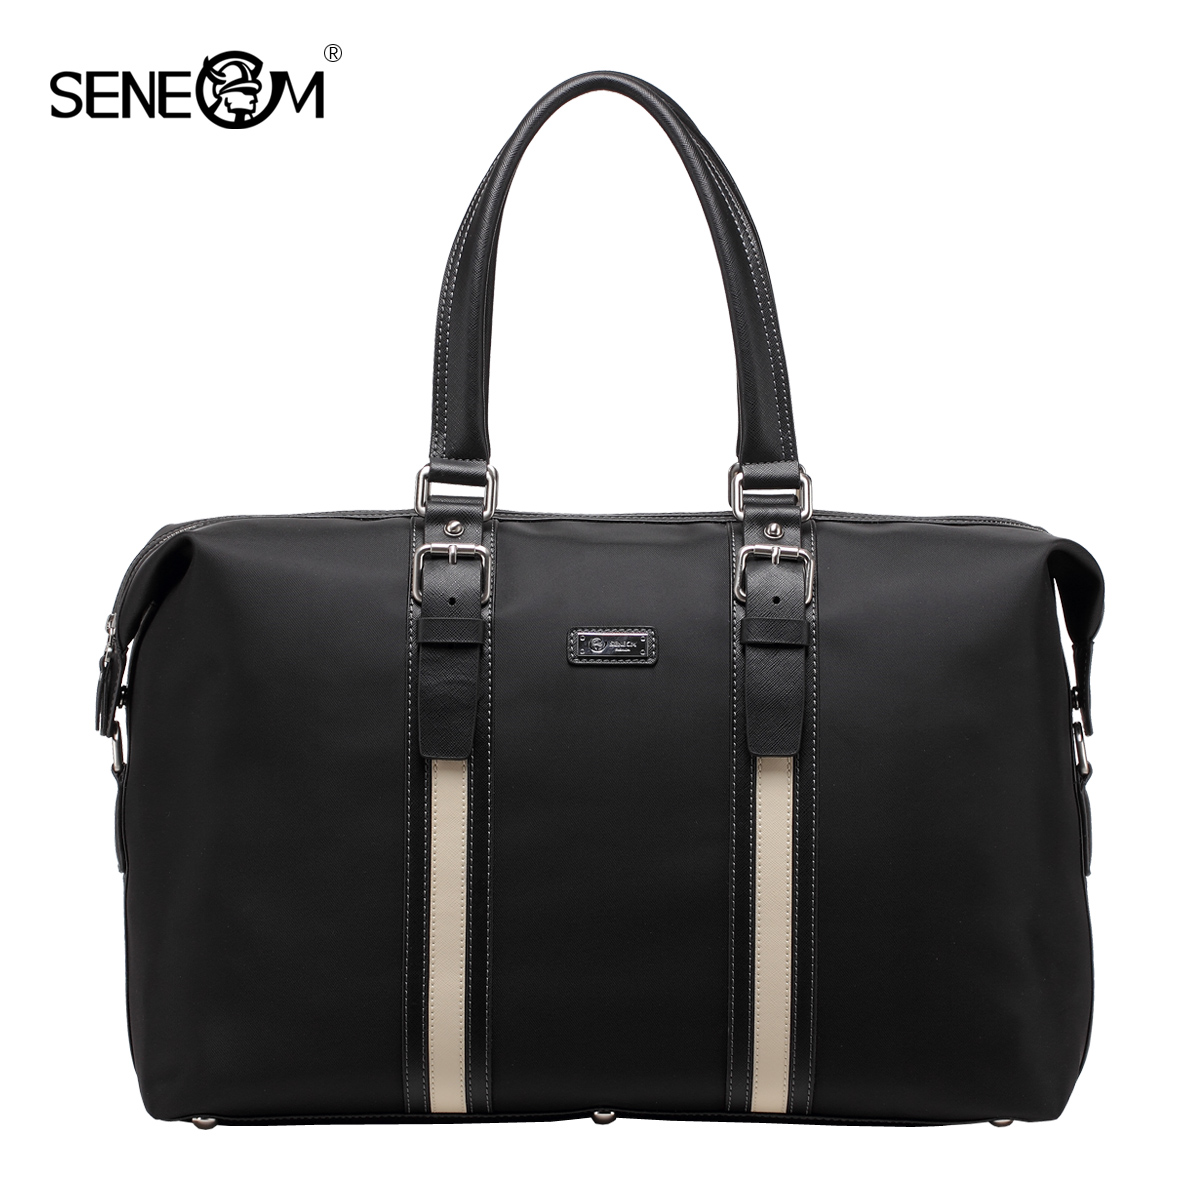 圣诺玛2016新款品牌男包旅行大包出差商务包潮休闲男士电脑手提包